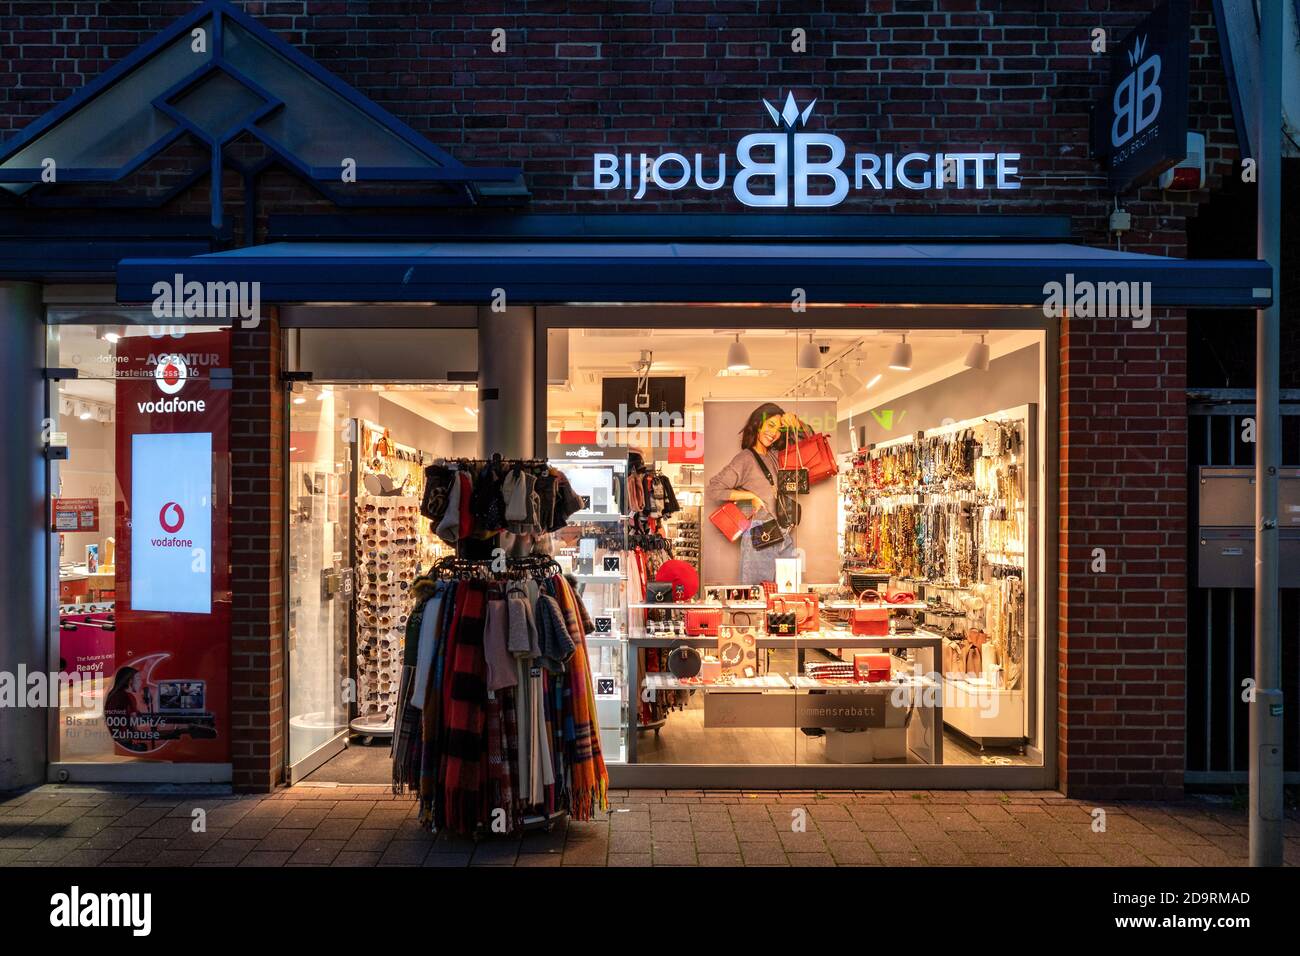 Bijou brigitte Banque de photographies et d'images à haute résolution -  Alamy